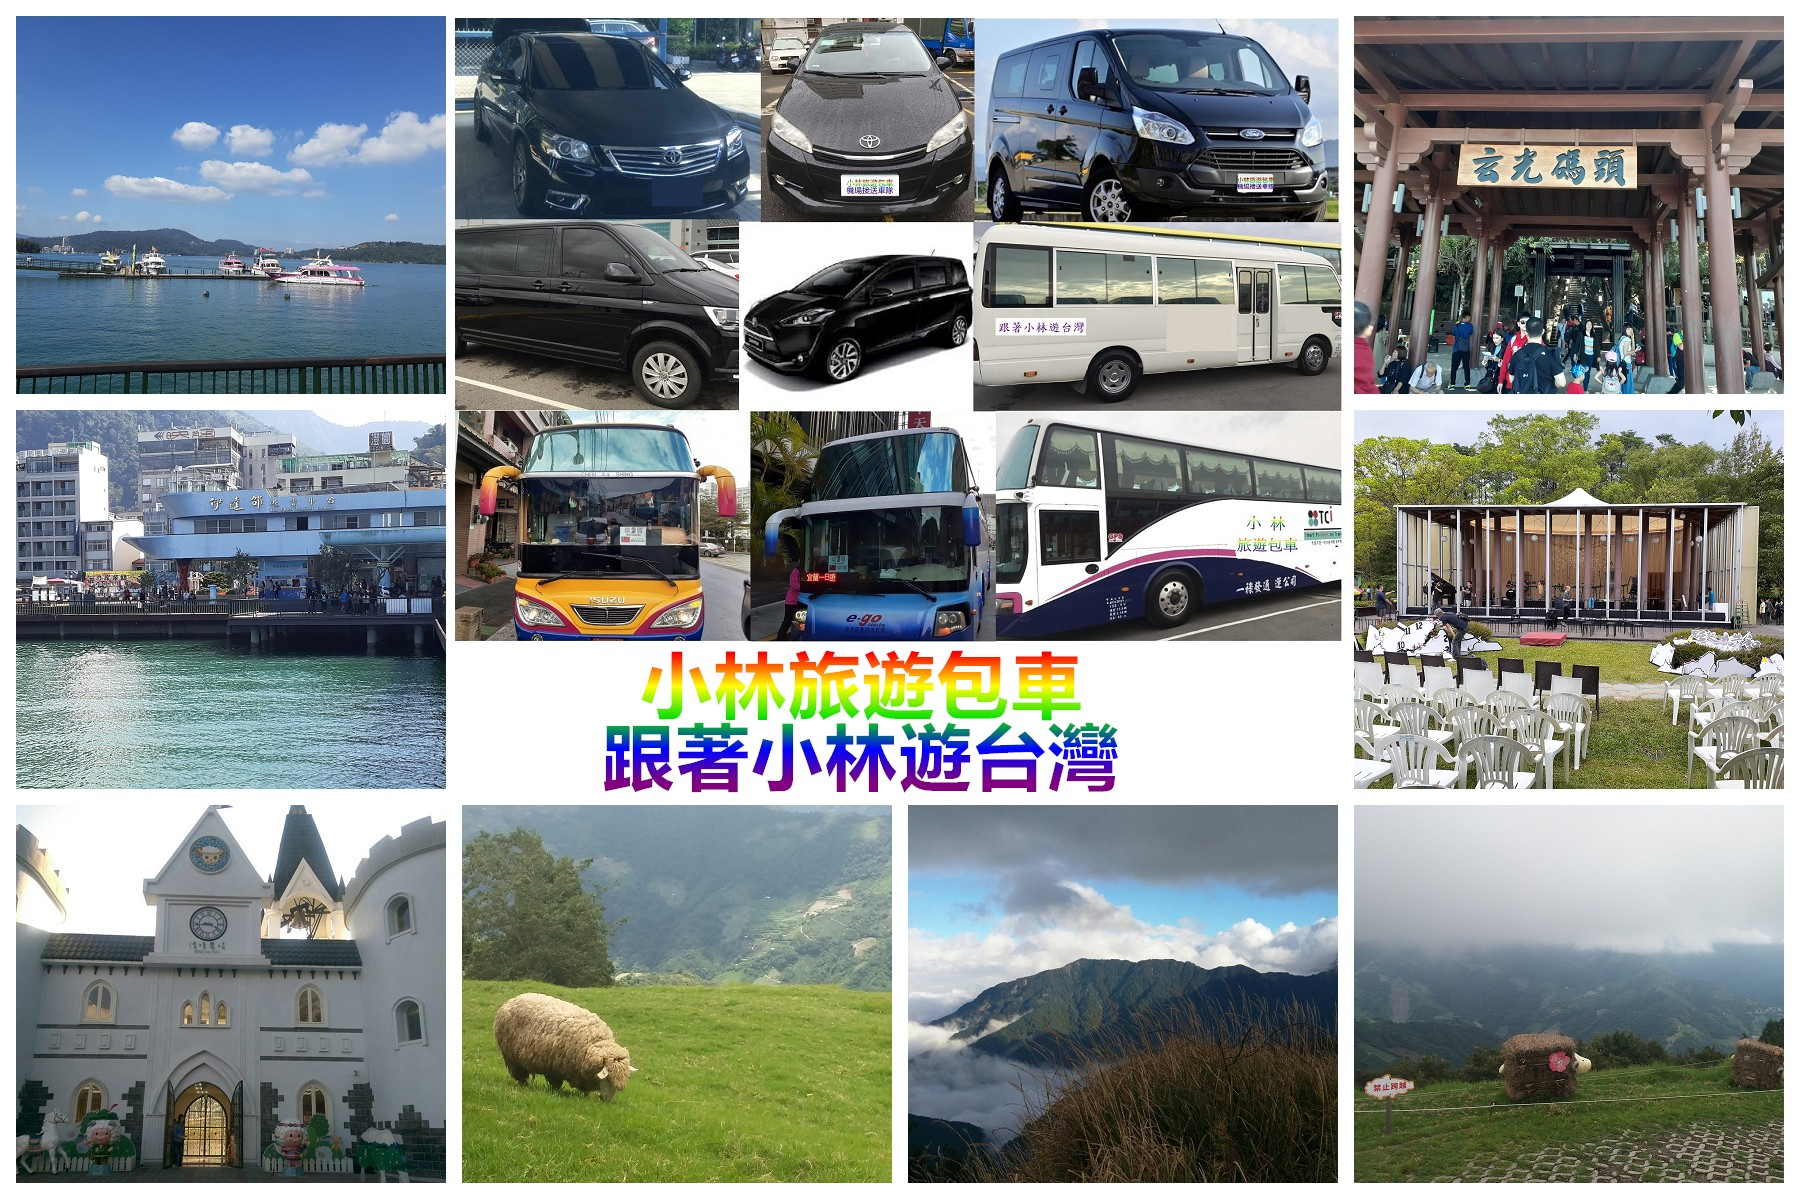 小林南投旅遊包車-南投集集一日遊自由行包車旅遊